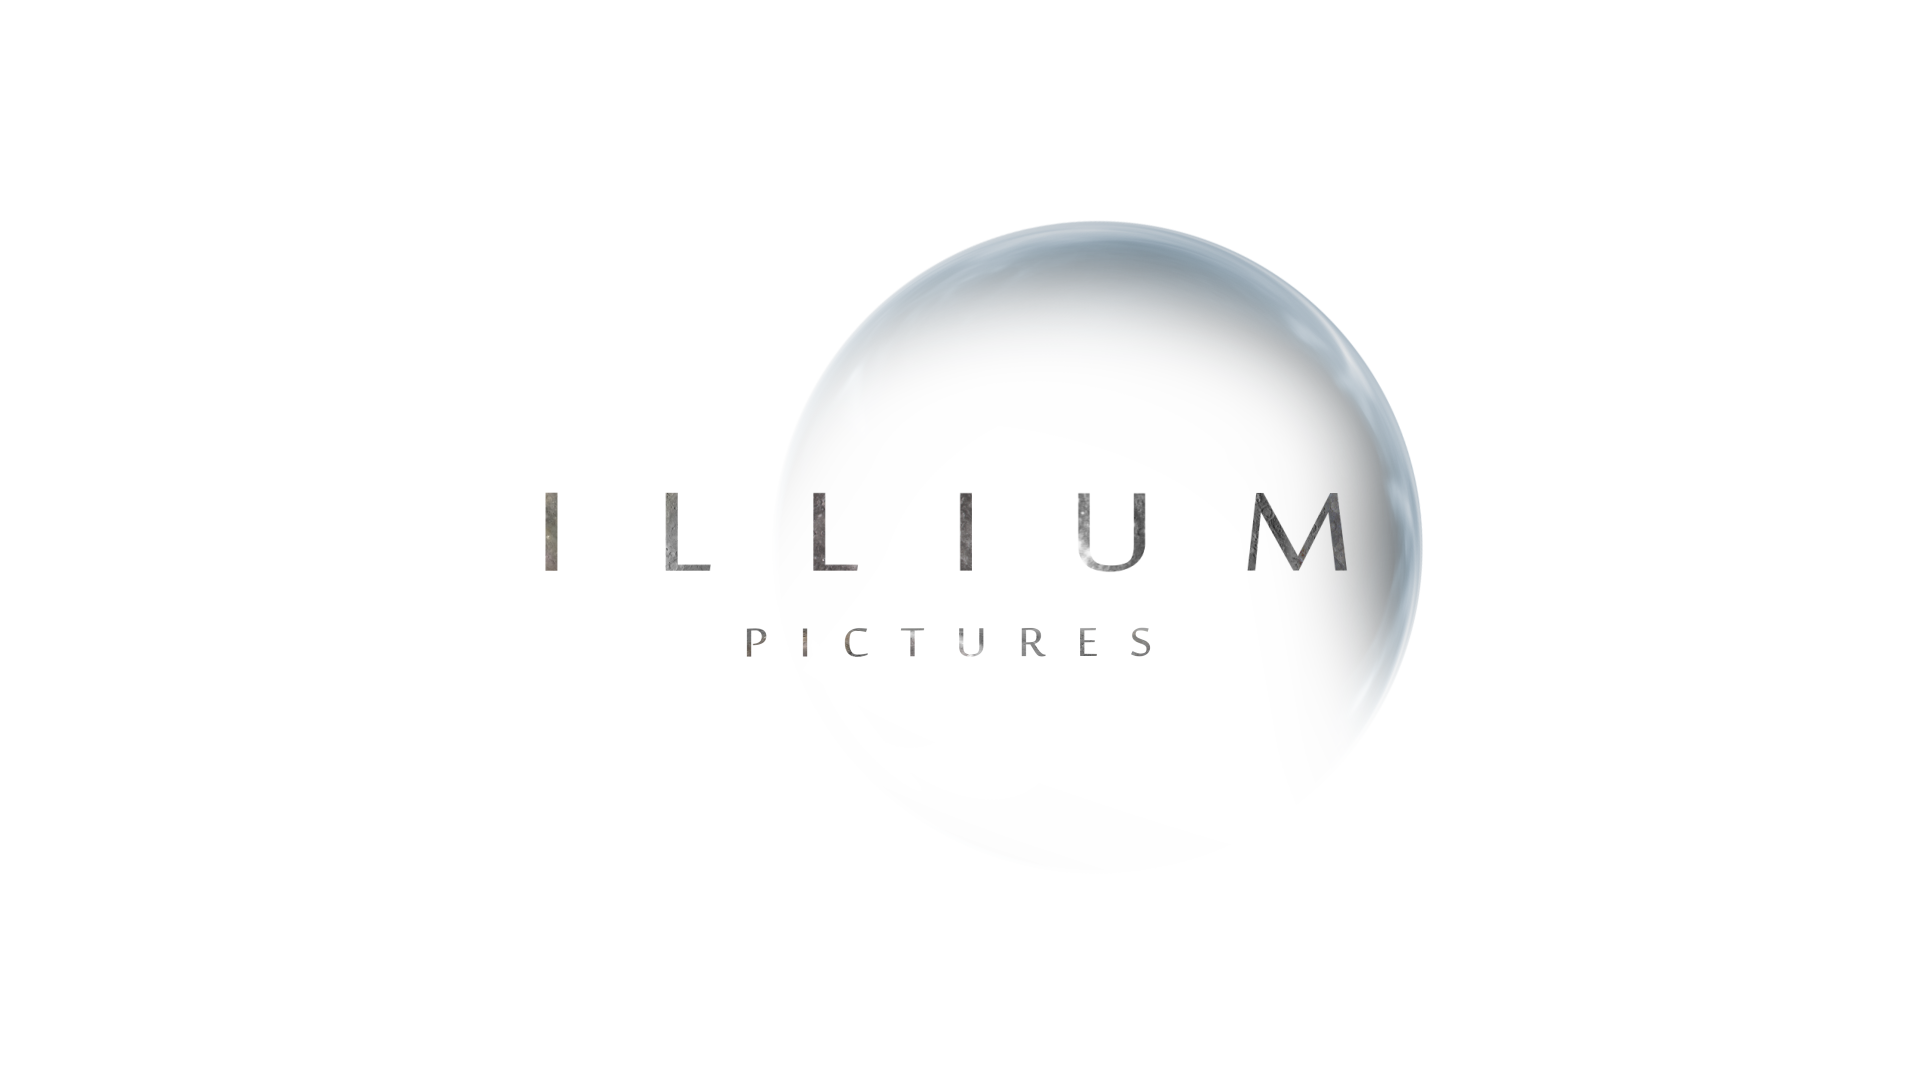 ILLIUM PICTURES